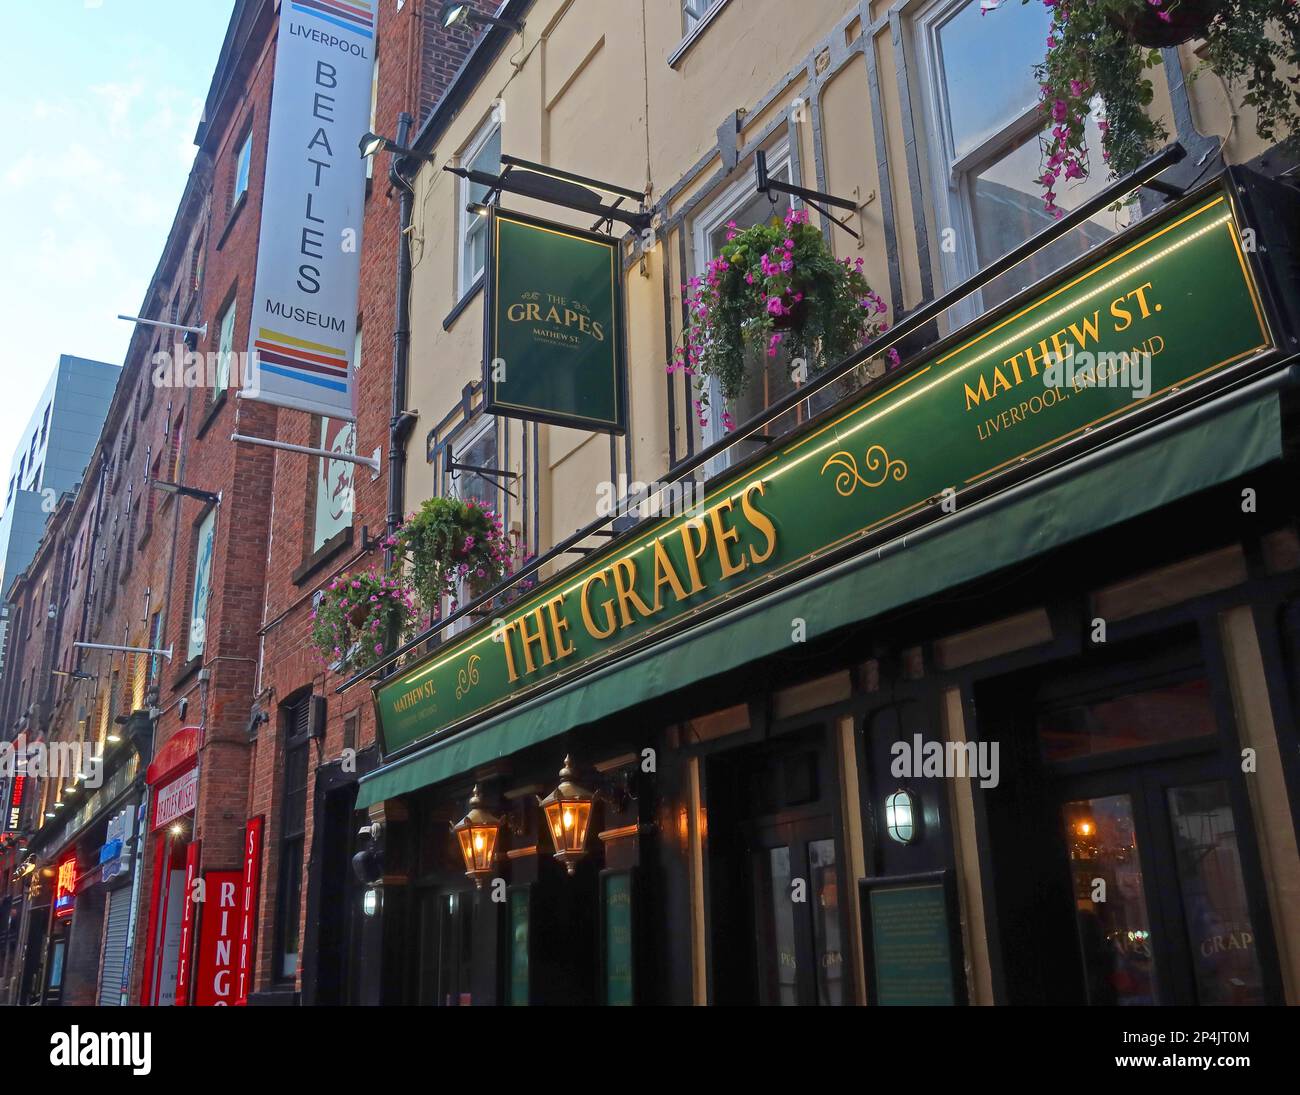 The Grapes pub, où les Beatles se sont assis et ont bu, 25 Mathew St Liverpool, Merseyside, Angleterre, Royaume-Uni, L2 6RE Banque D'Images